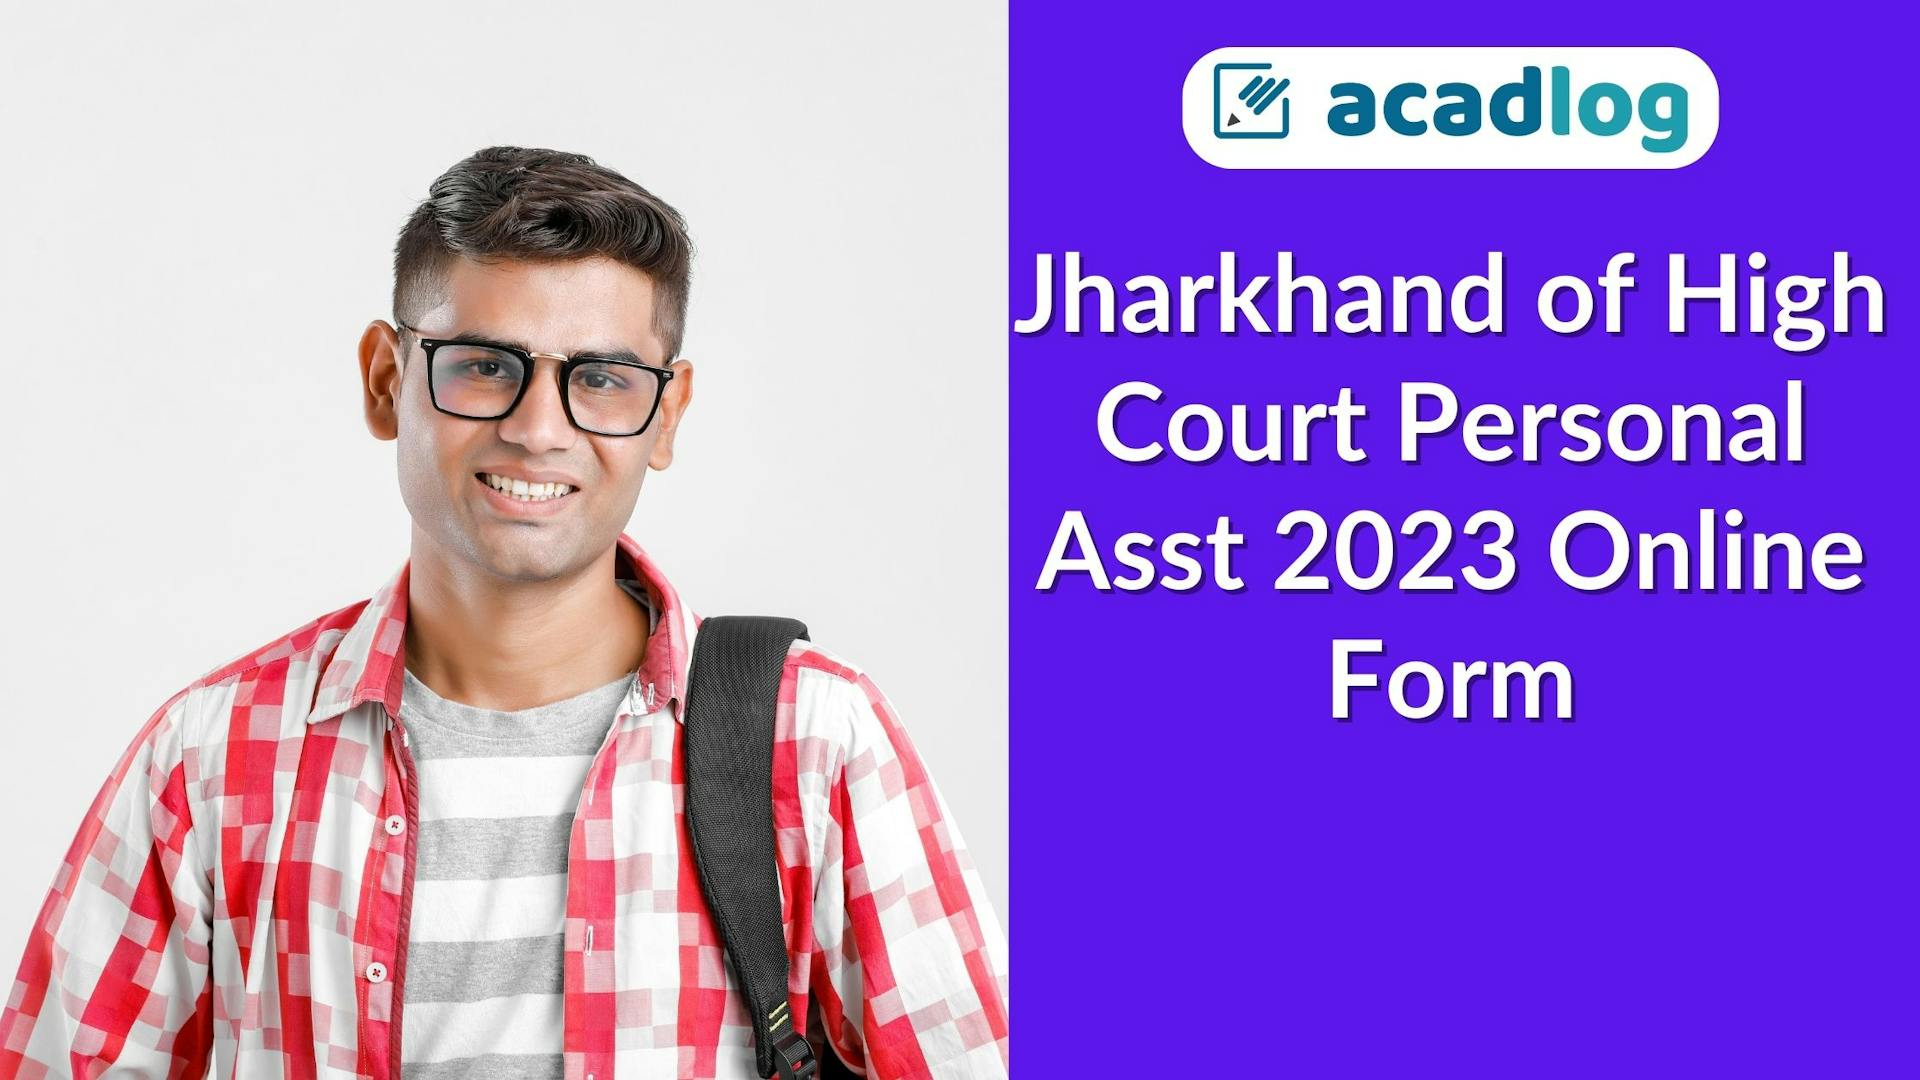 Jharkhand of High Court Personal Asst 2023 Online Form